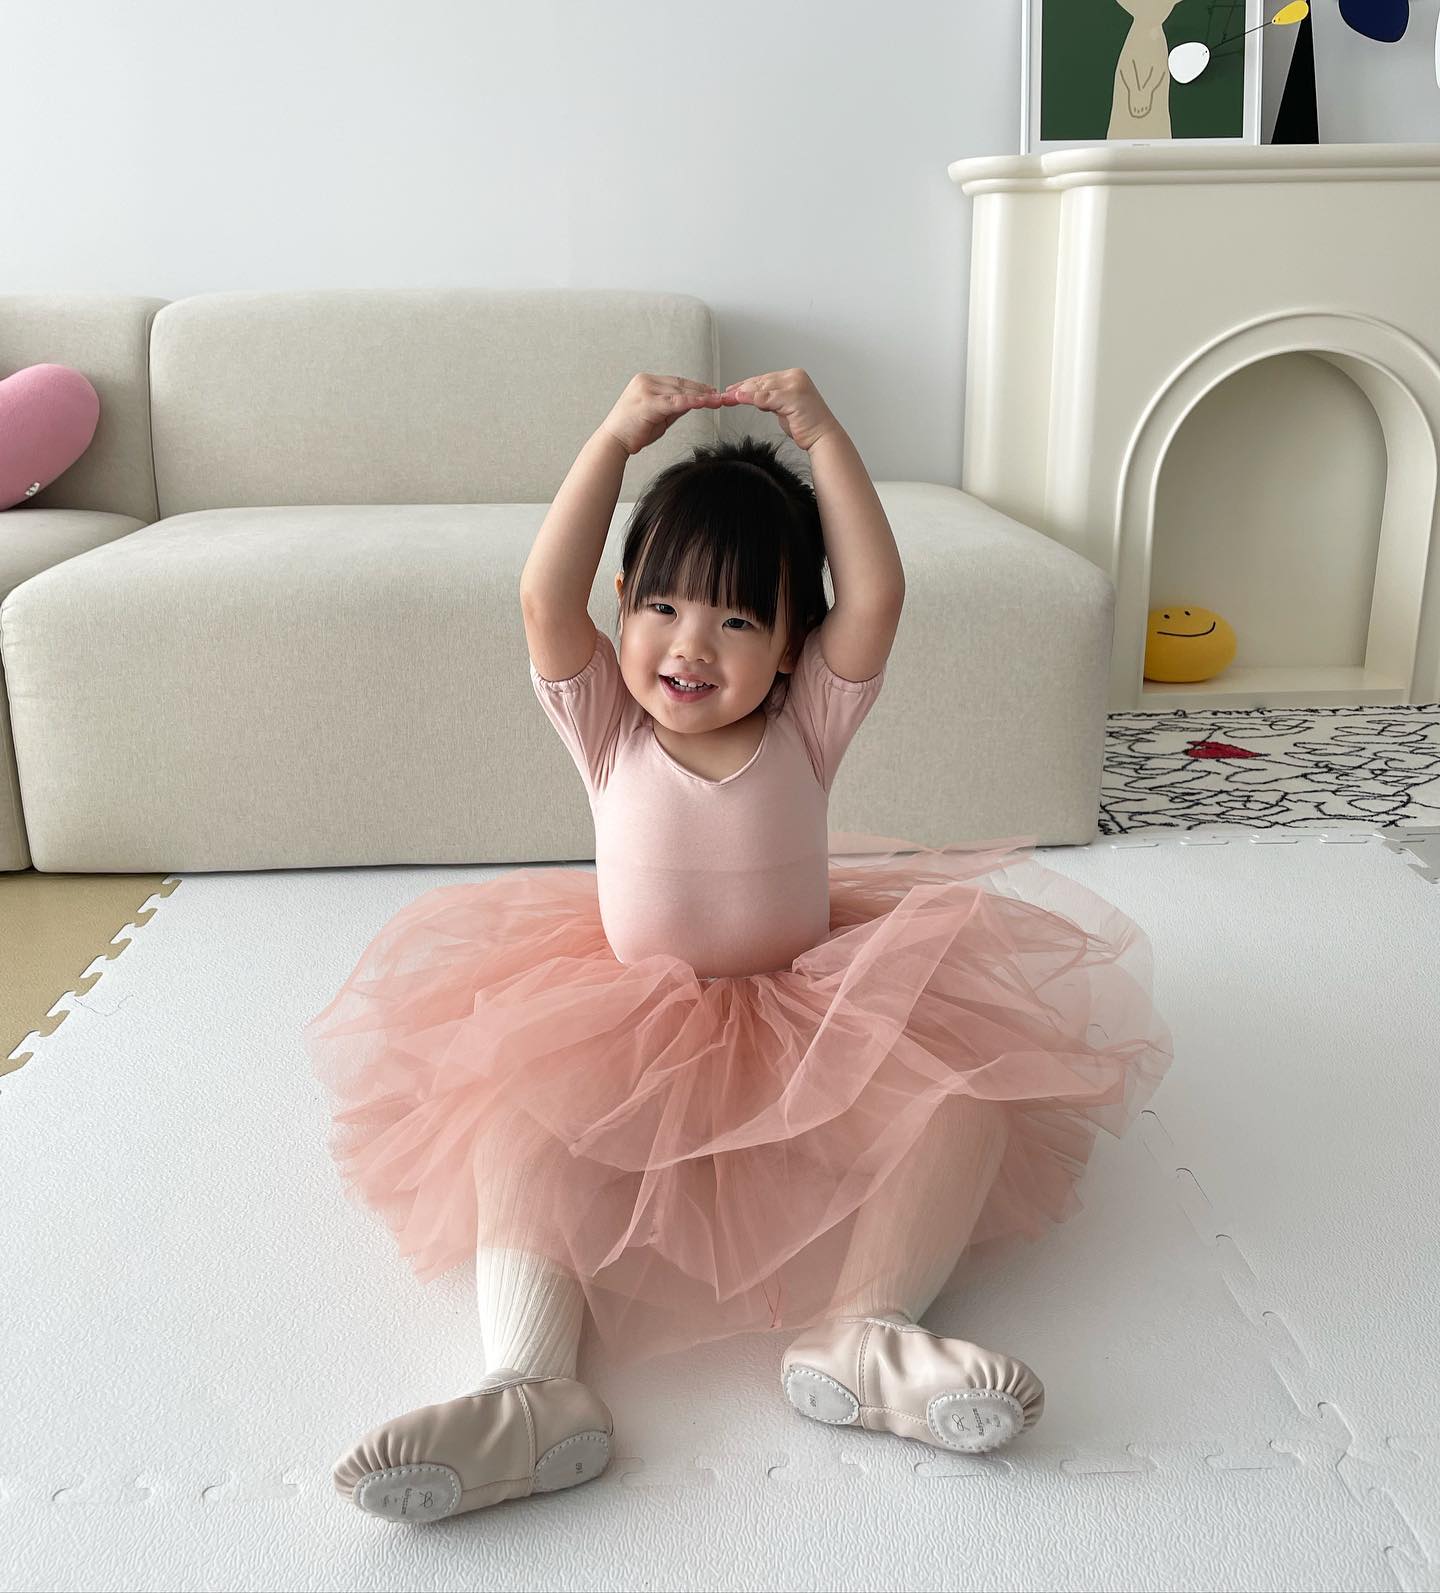 코로나로 아이가 좋아하던 발레 수업이 중단되어 어플(아이고고)을 통해 홈스쿨 발레를 시작하게 되었다고.